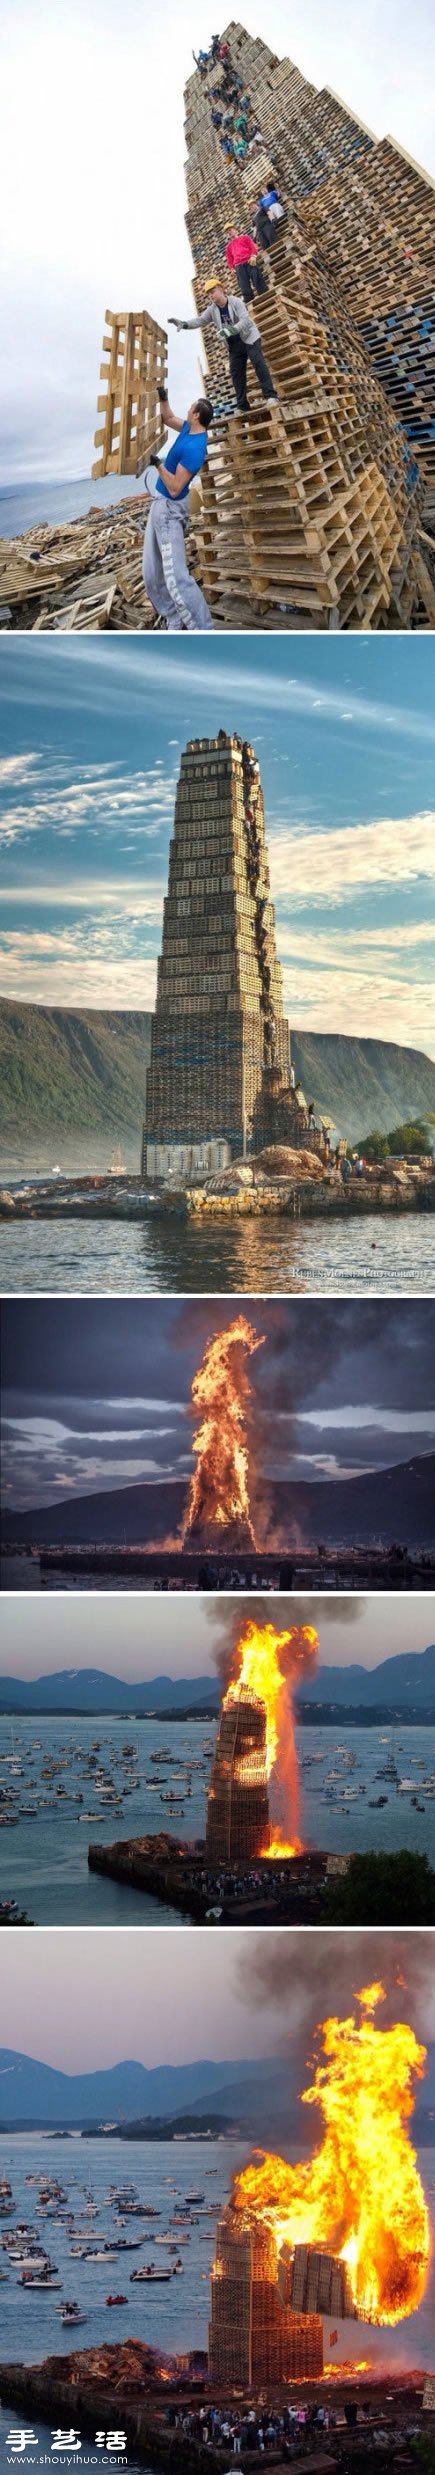 一群挪威人堆出的世界上最高的火堆